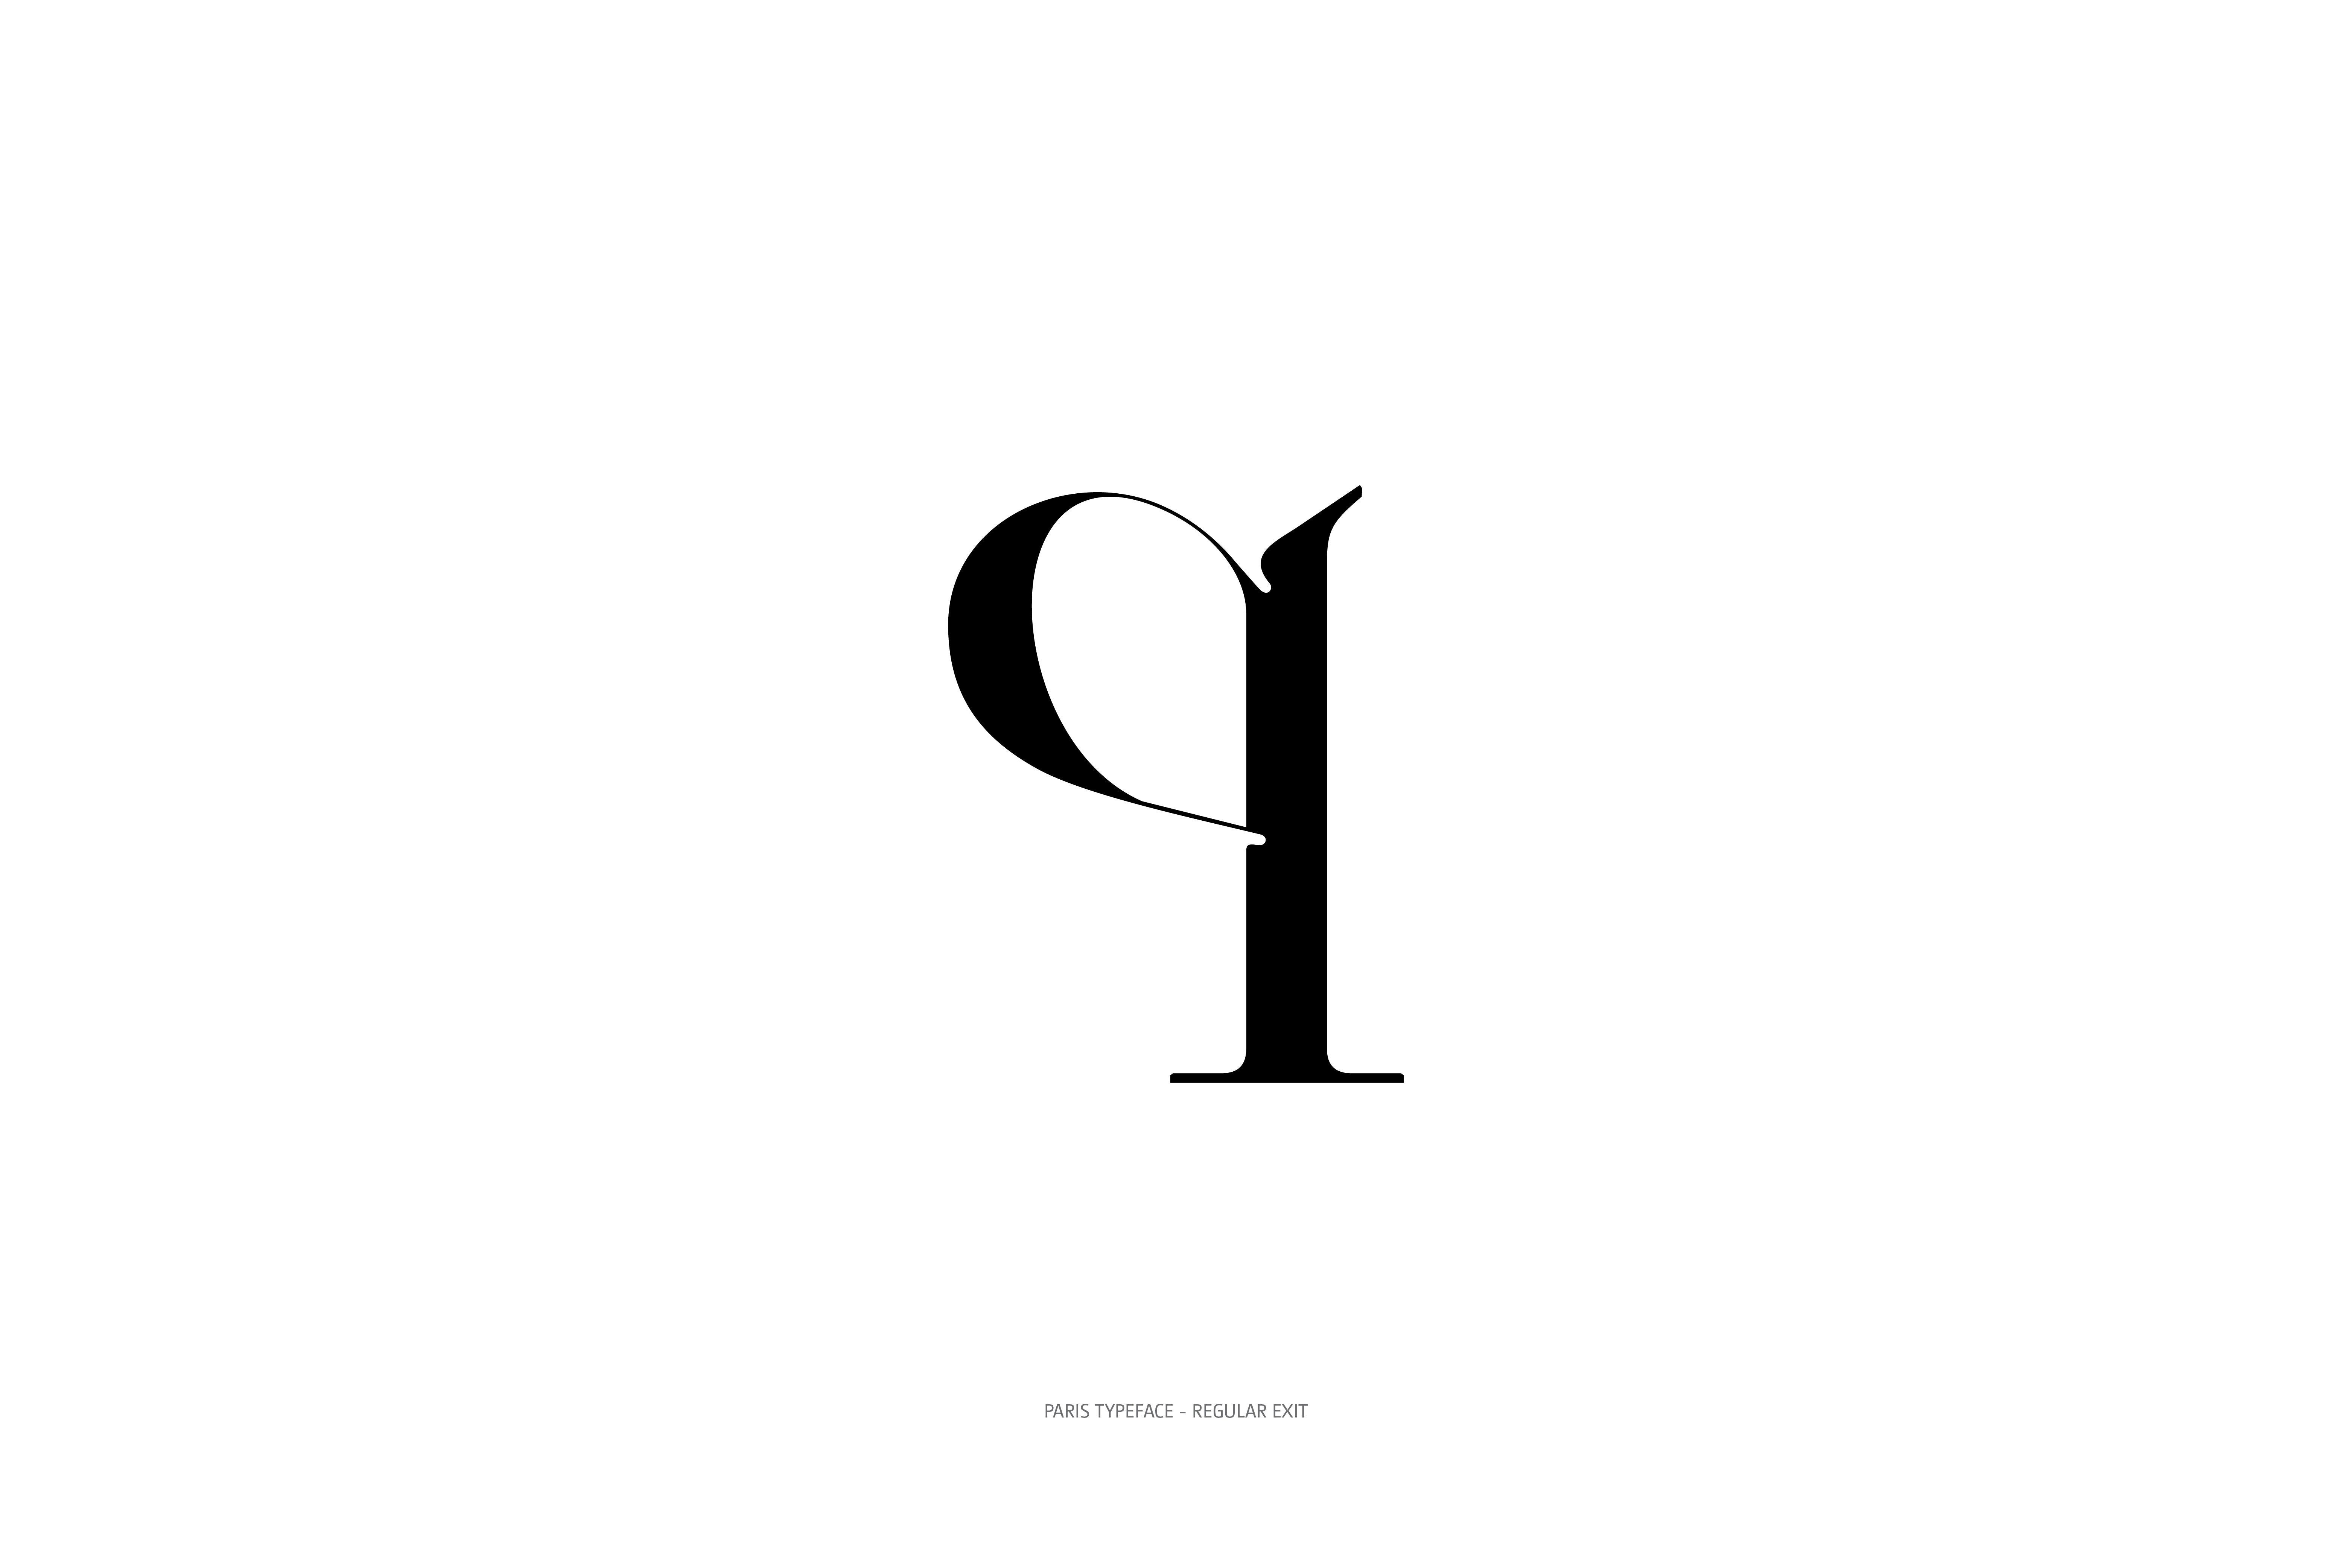 Paris Typeface Regular Exit q